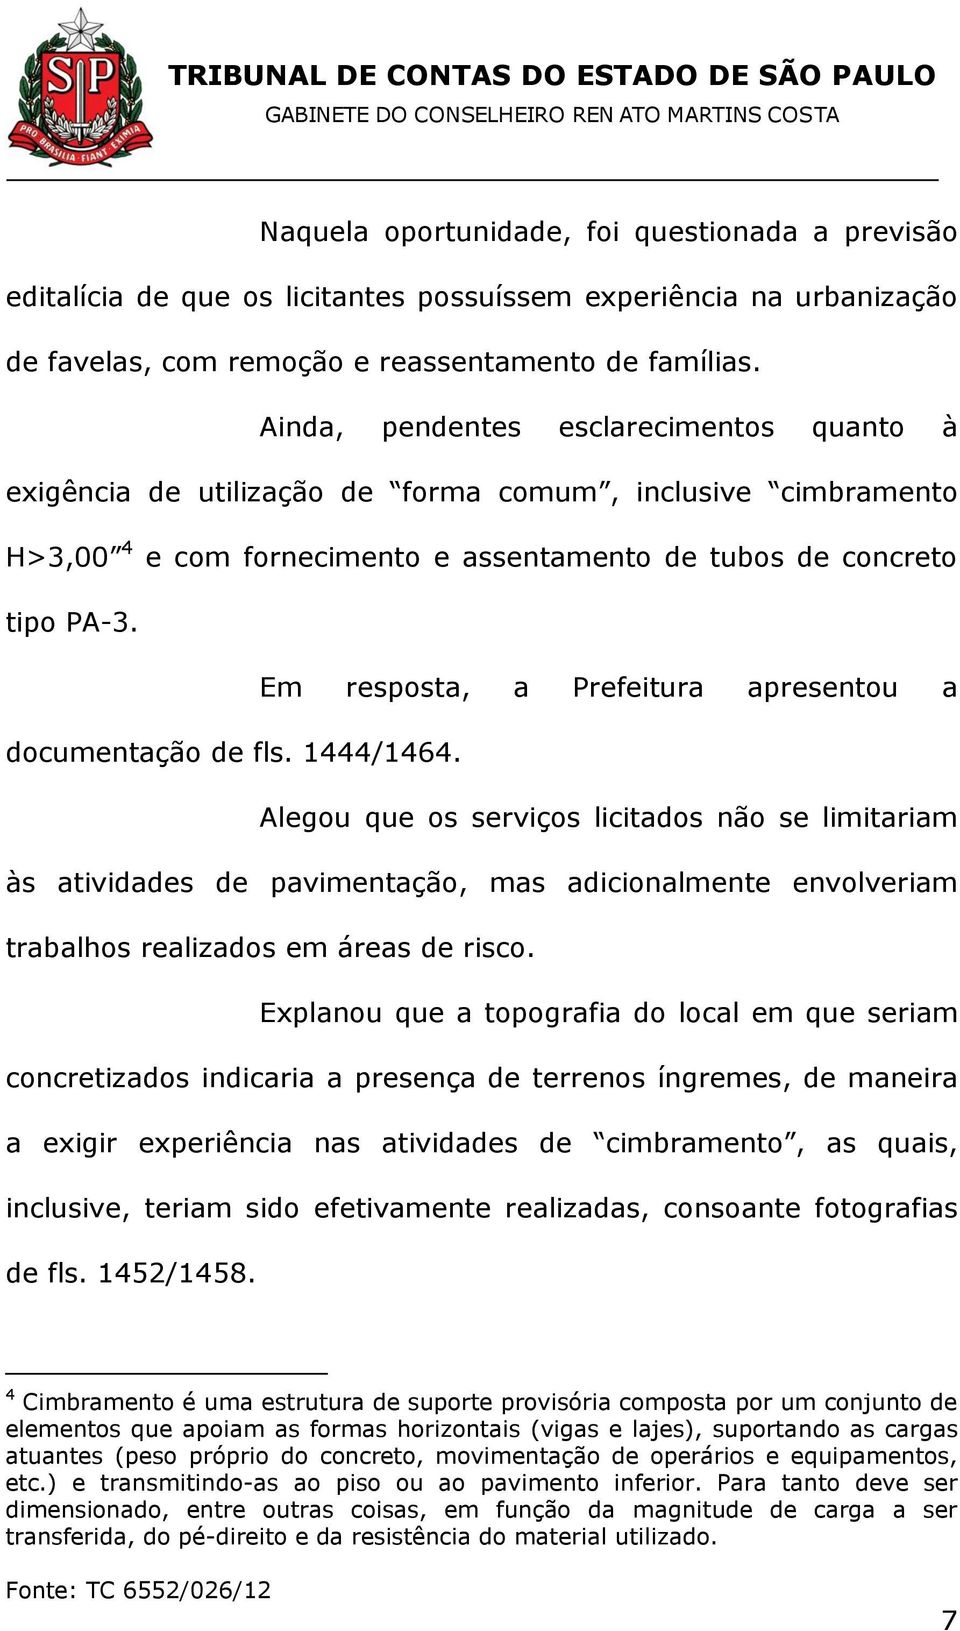 Em resposta, a Prefeitura apresentou a documentação de fls. 1444/1464.